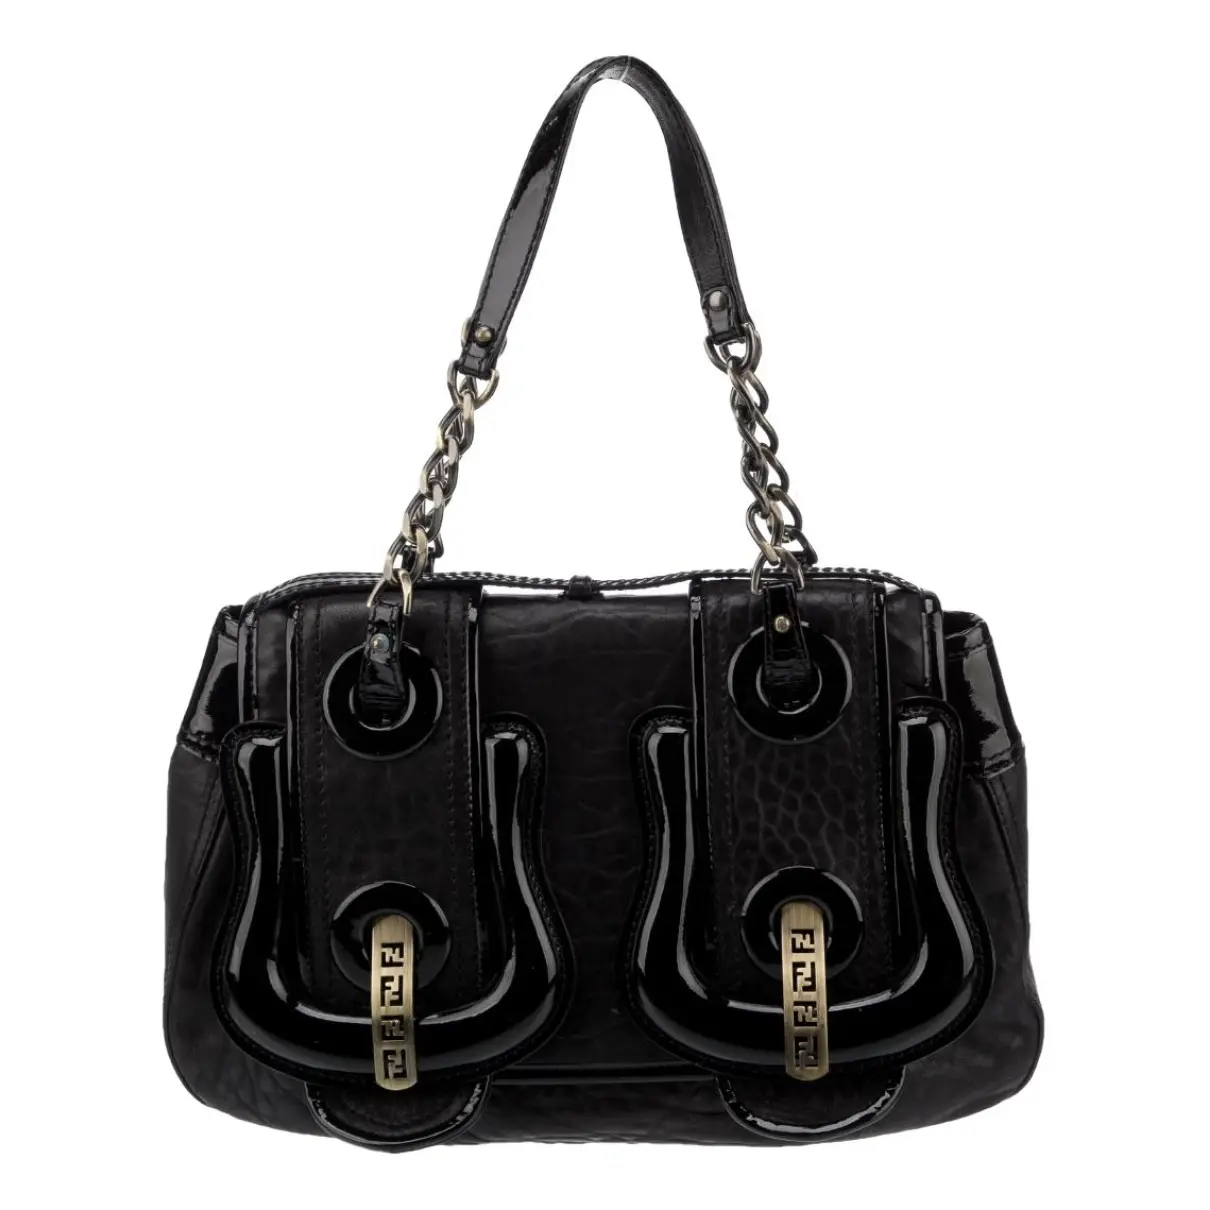 Bag leather handbag